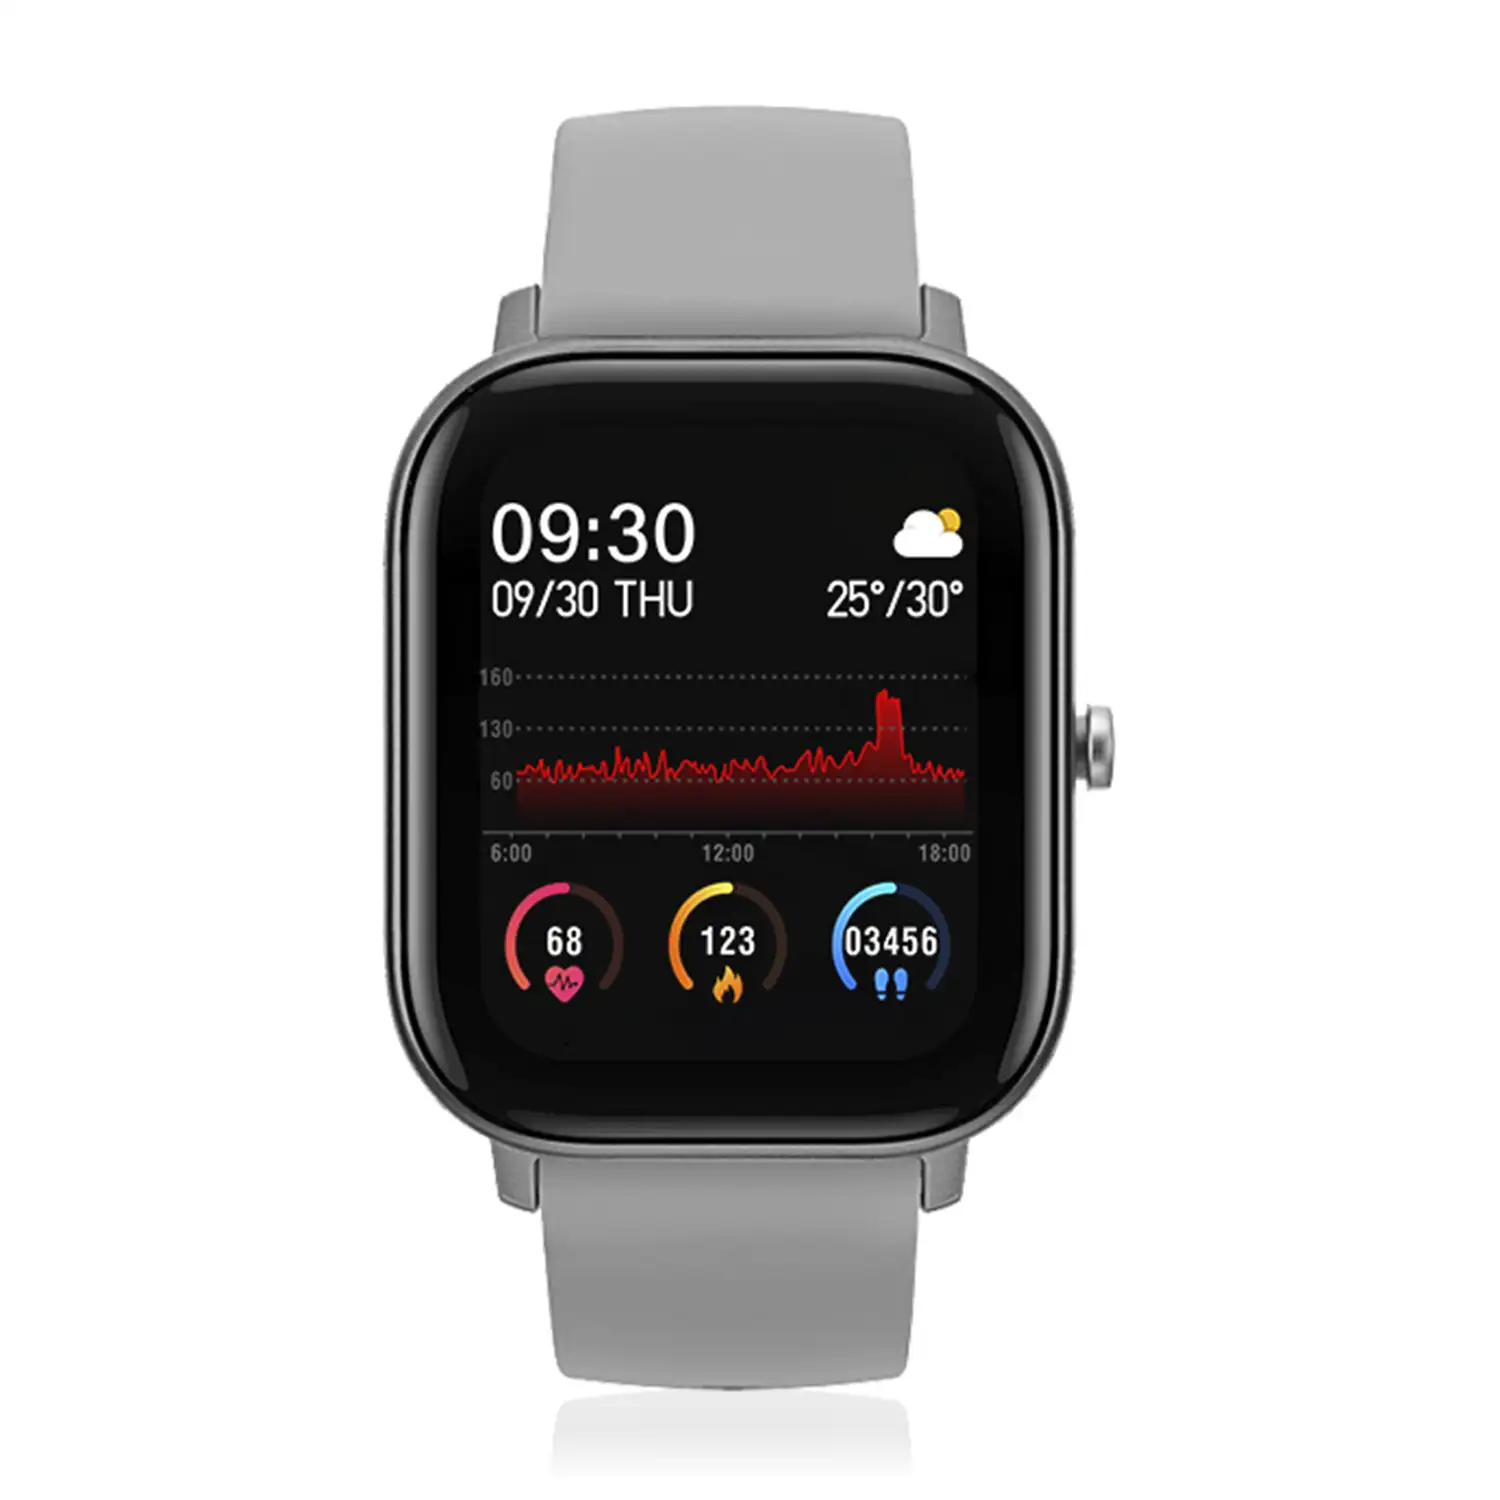 Smartwatch AK-P8 con monitorización de ritmo cardiaco, presión sanguínea, oxígeno en sangre, modo multideportivo y notificaciones.